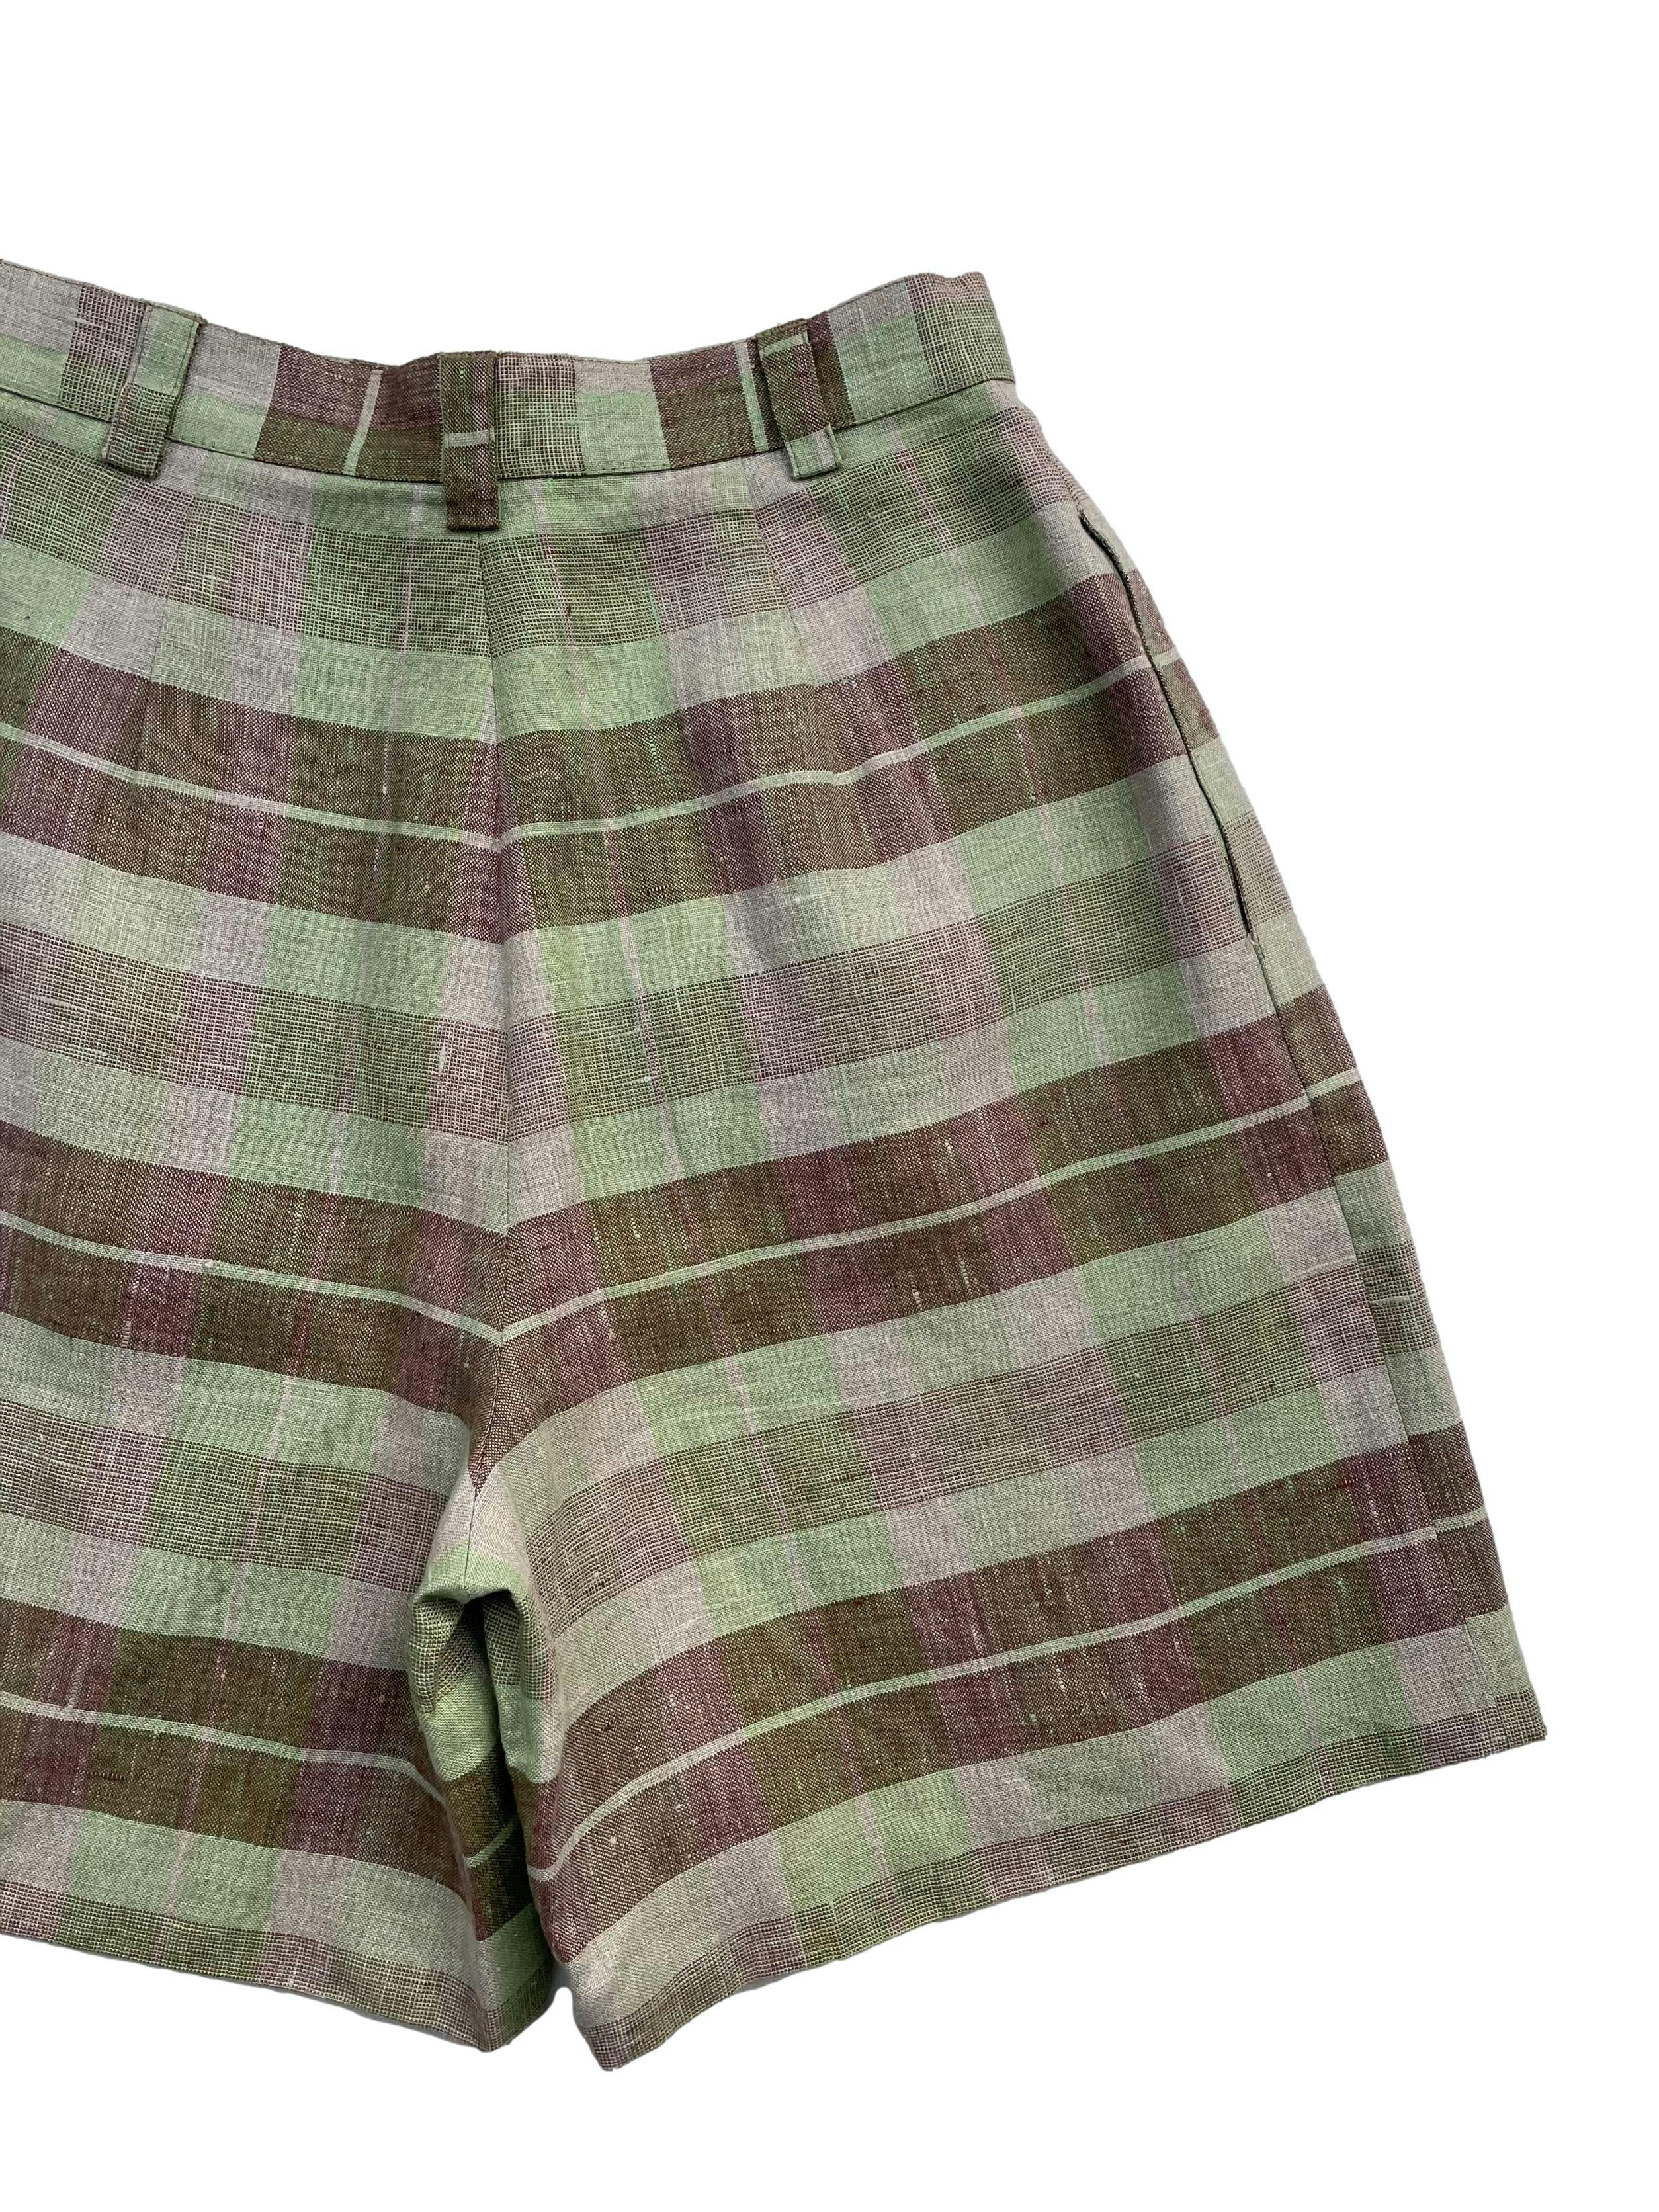 Short vintage tela tipo lino ,a cuadros en tonos verde y rosado con bolsillos laterales. Nuevo sin etiqueta. Cintura 68cm,Largo 49cm.